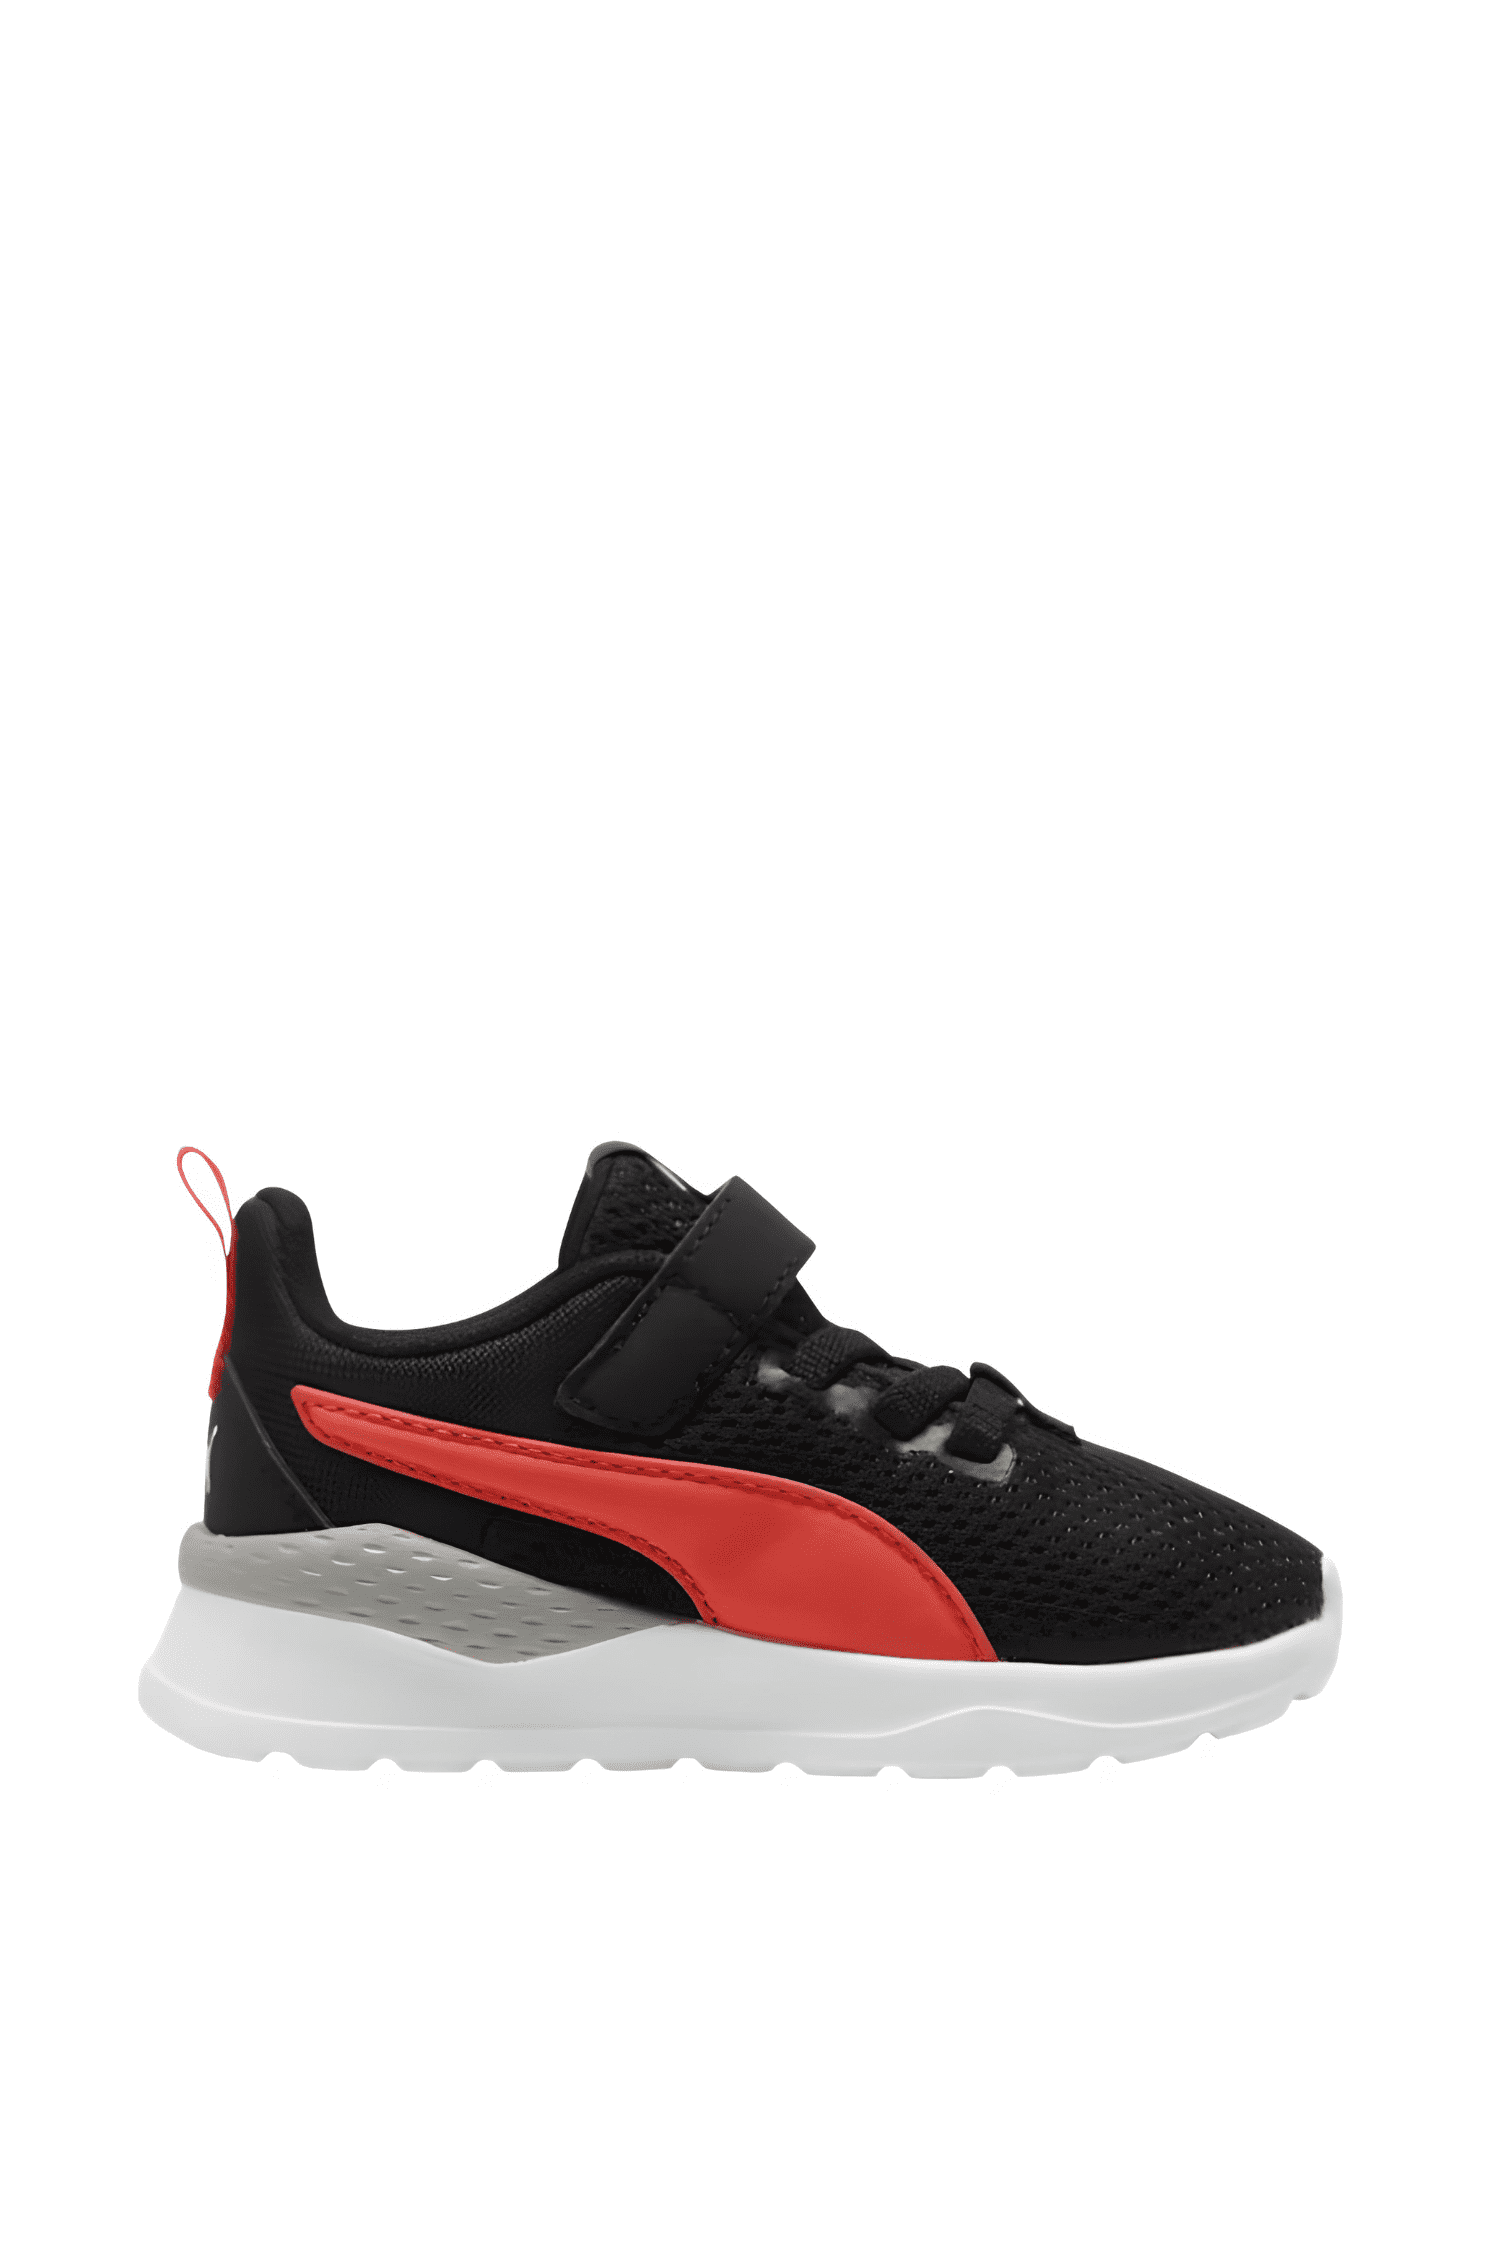 נעלי ספורט פומה לילדים Puma Anzarun Lite AC בצבע שחור-Puma-20-נאקו